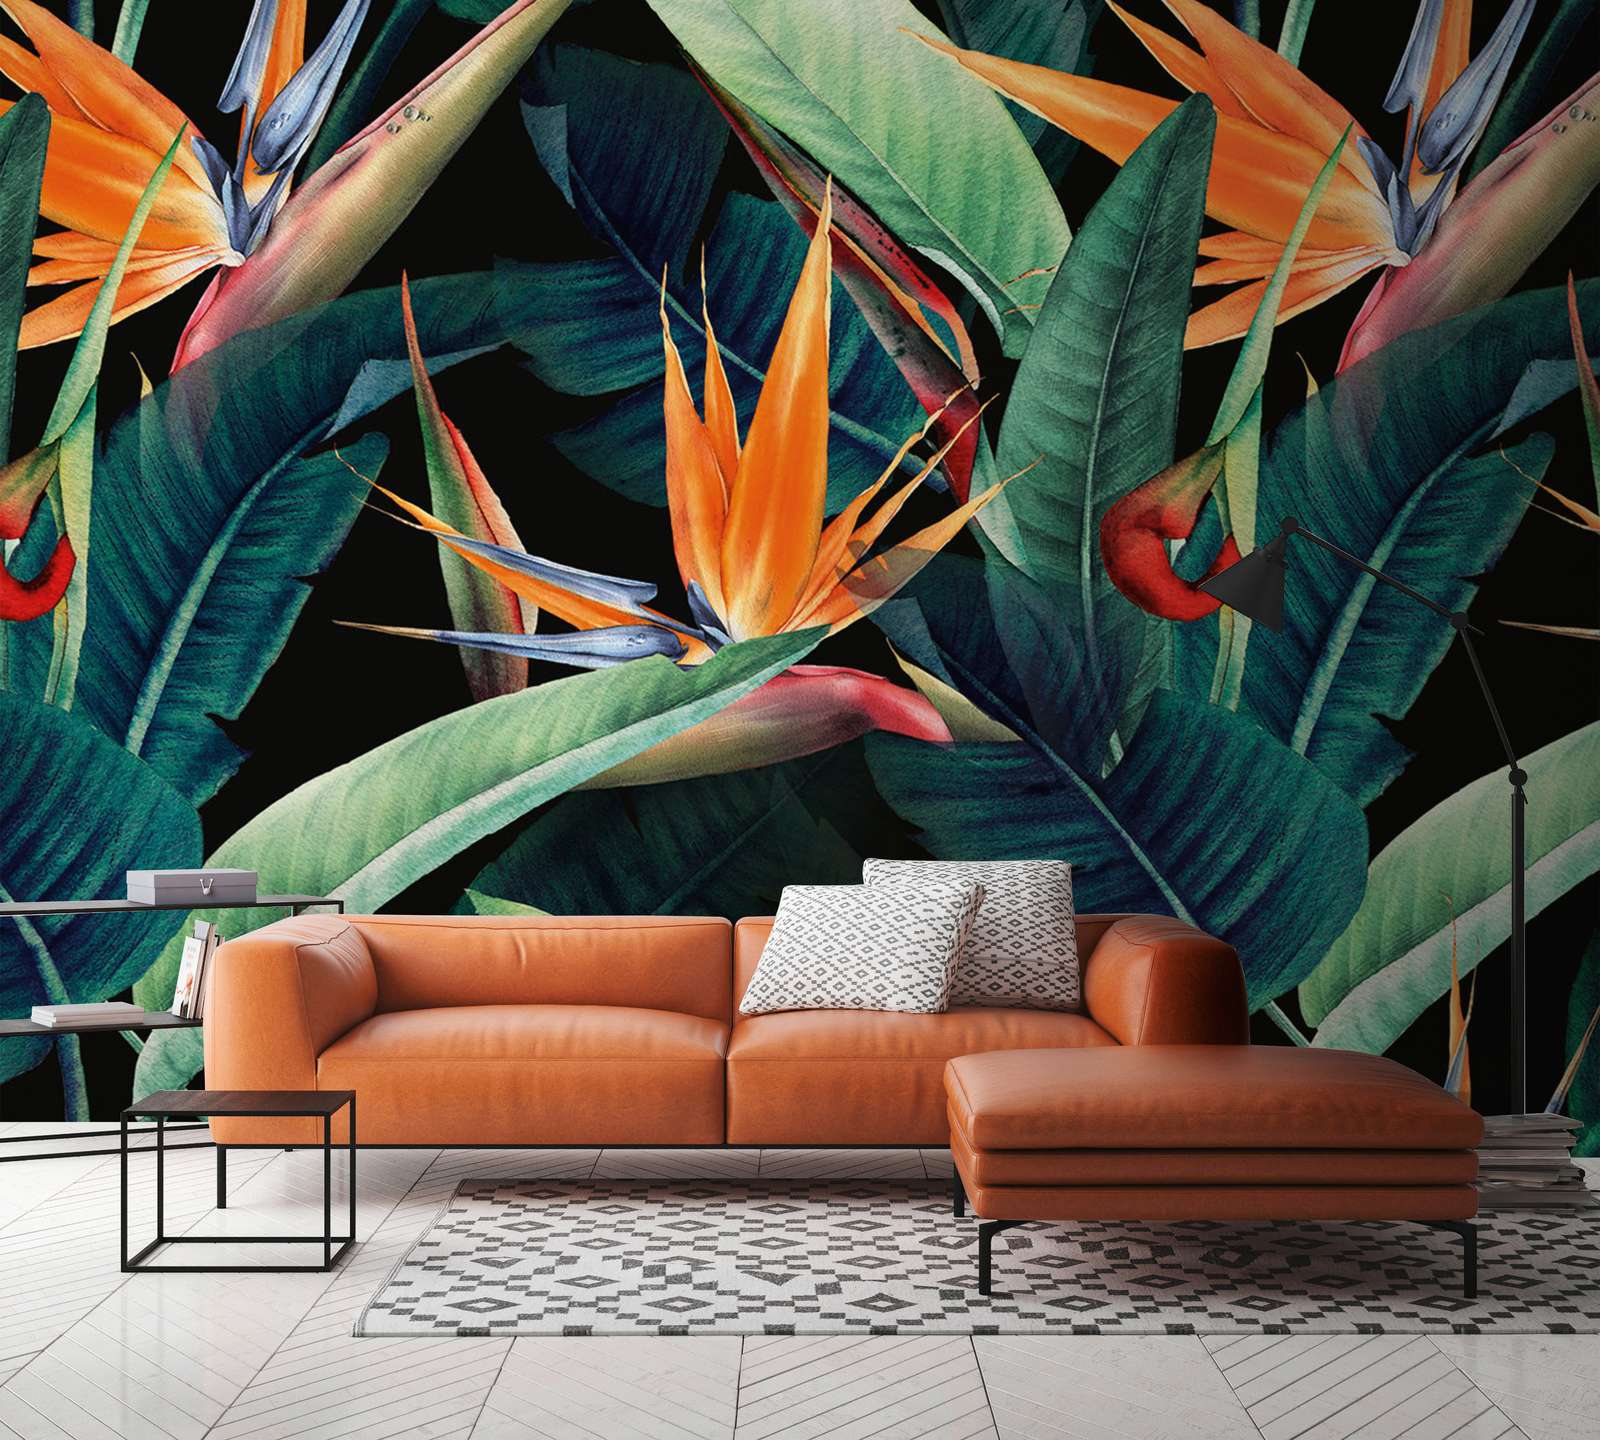             Papier peint panoramique motif jungle peint avec des feuilles - vert, orange, multicolore
        